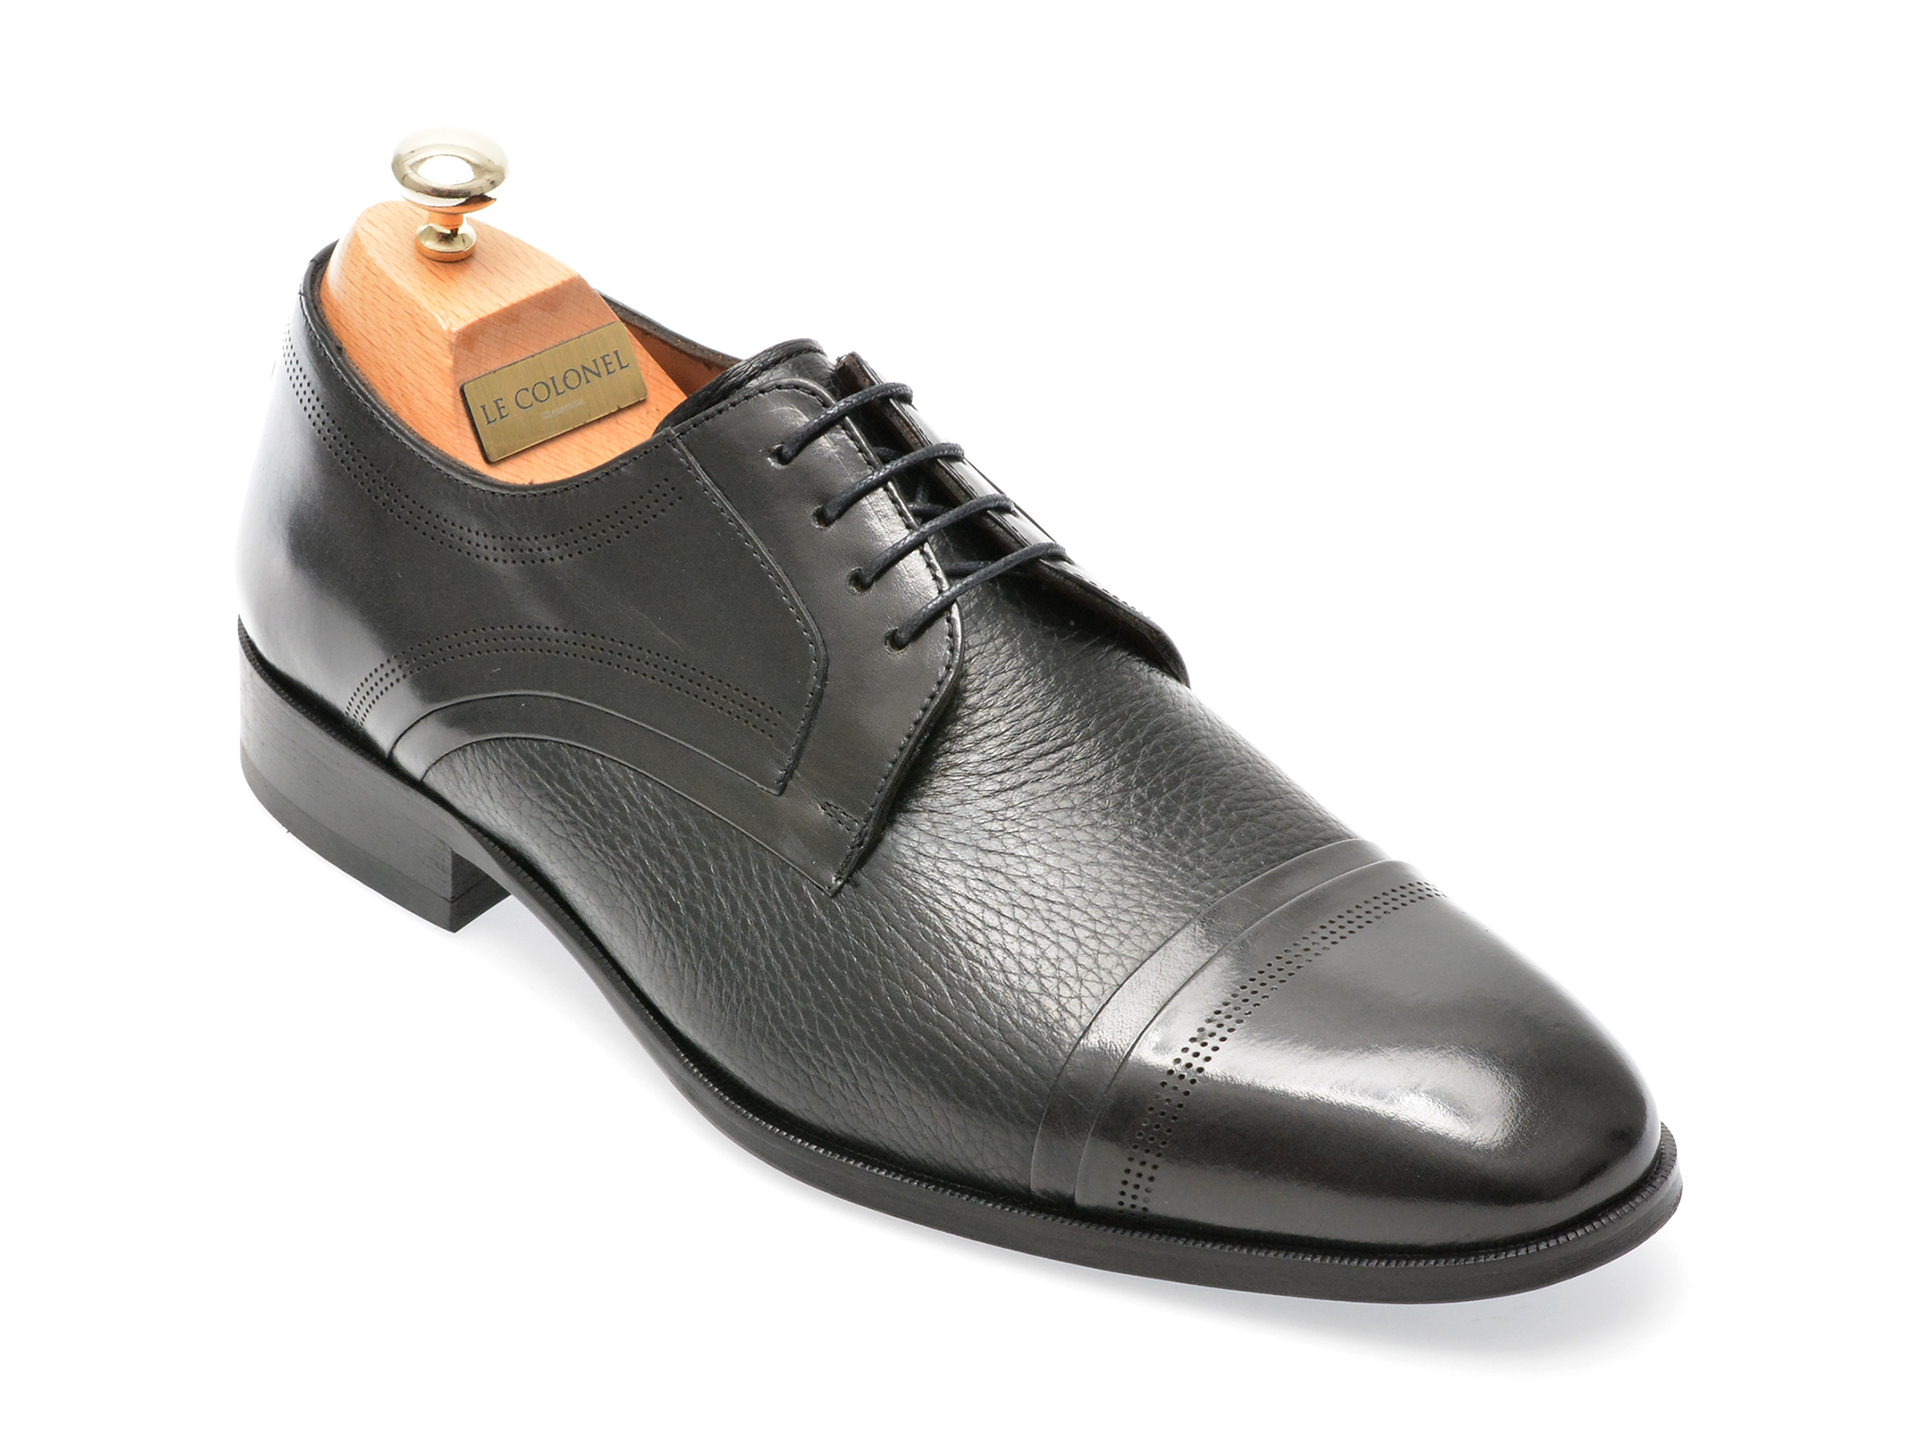 Pantofi LE COLONEL negri, 48470, din piele naturala Le Colonel